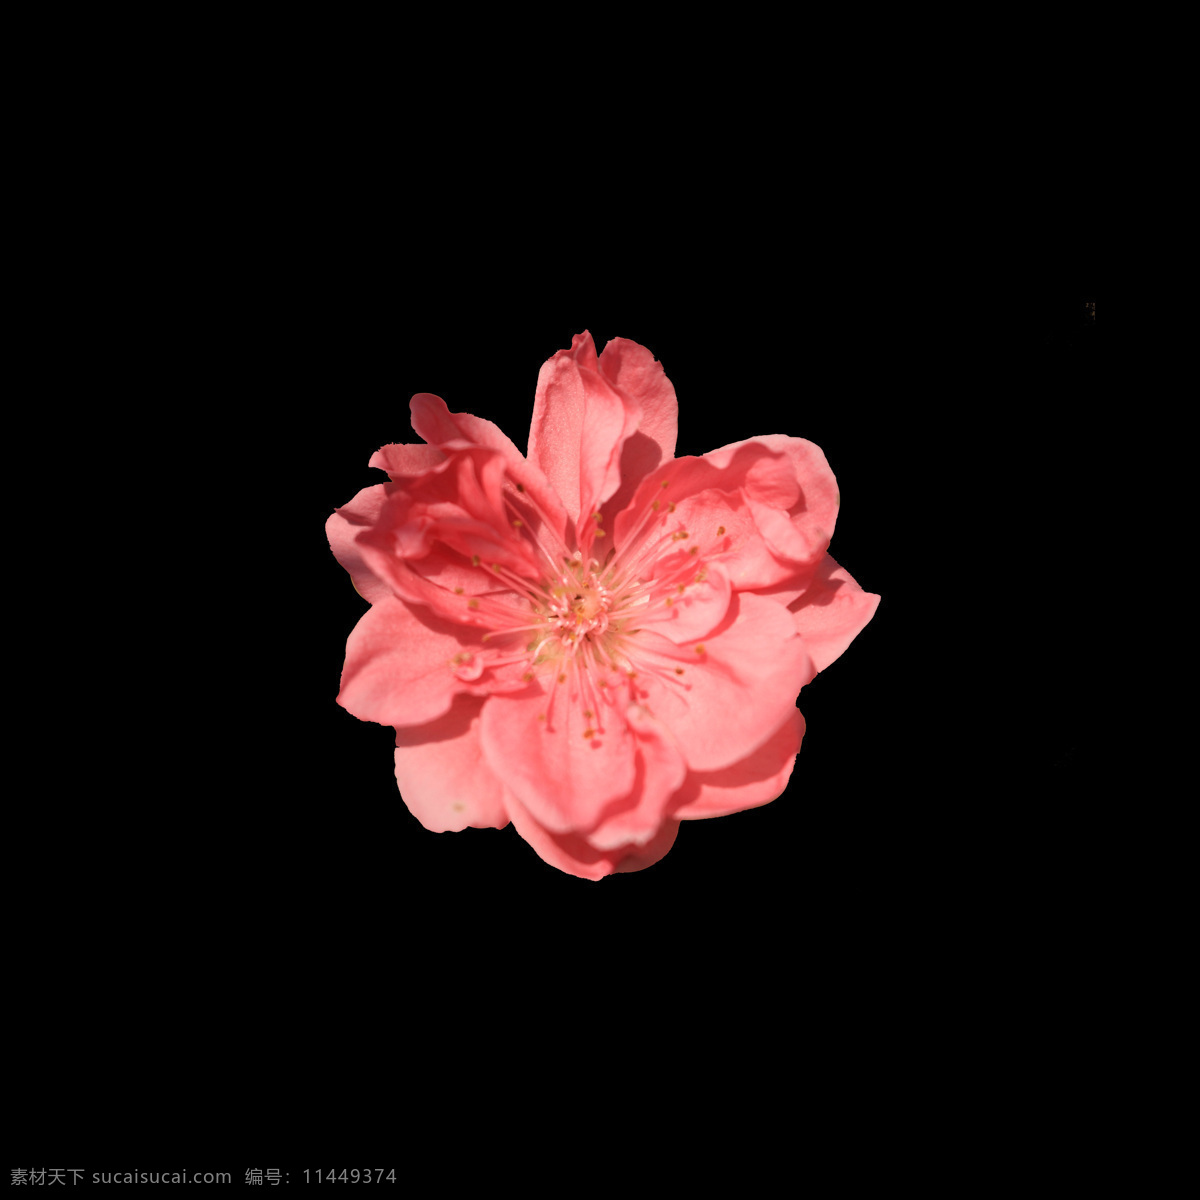 位图 写实花卉 植物 花朵 免费素材 面料图库 服装图案 黑色